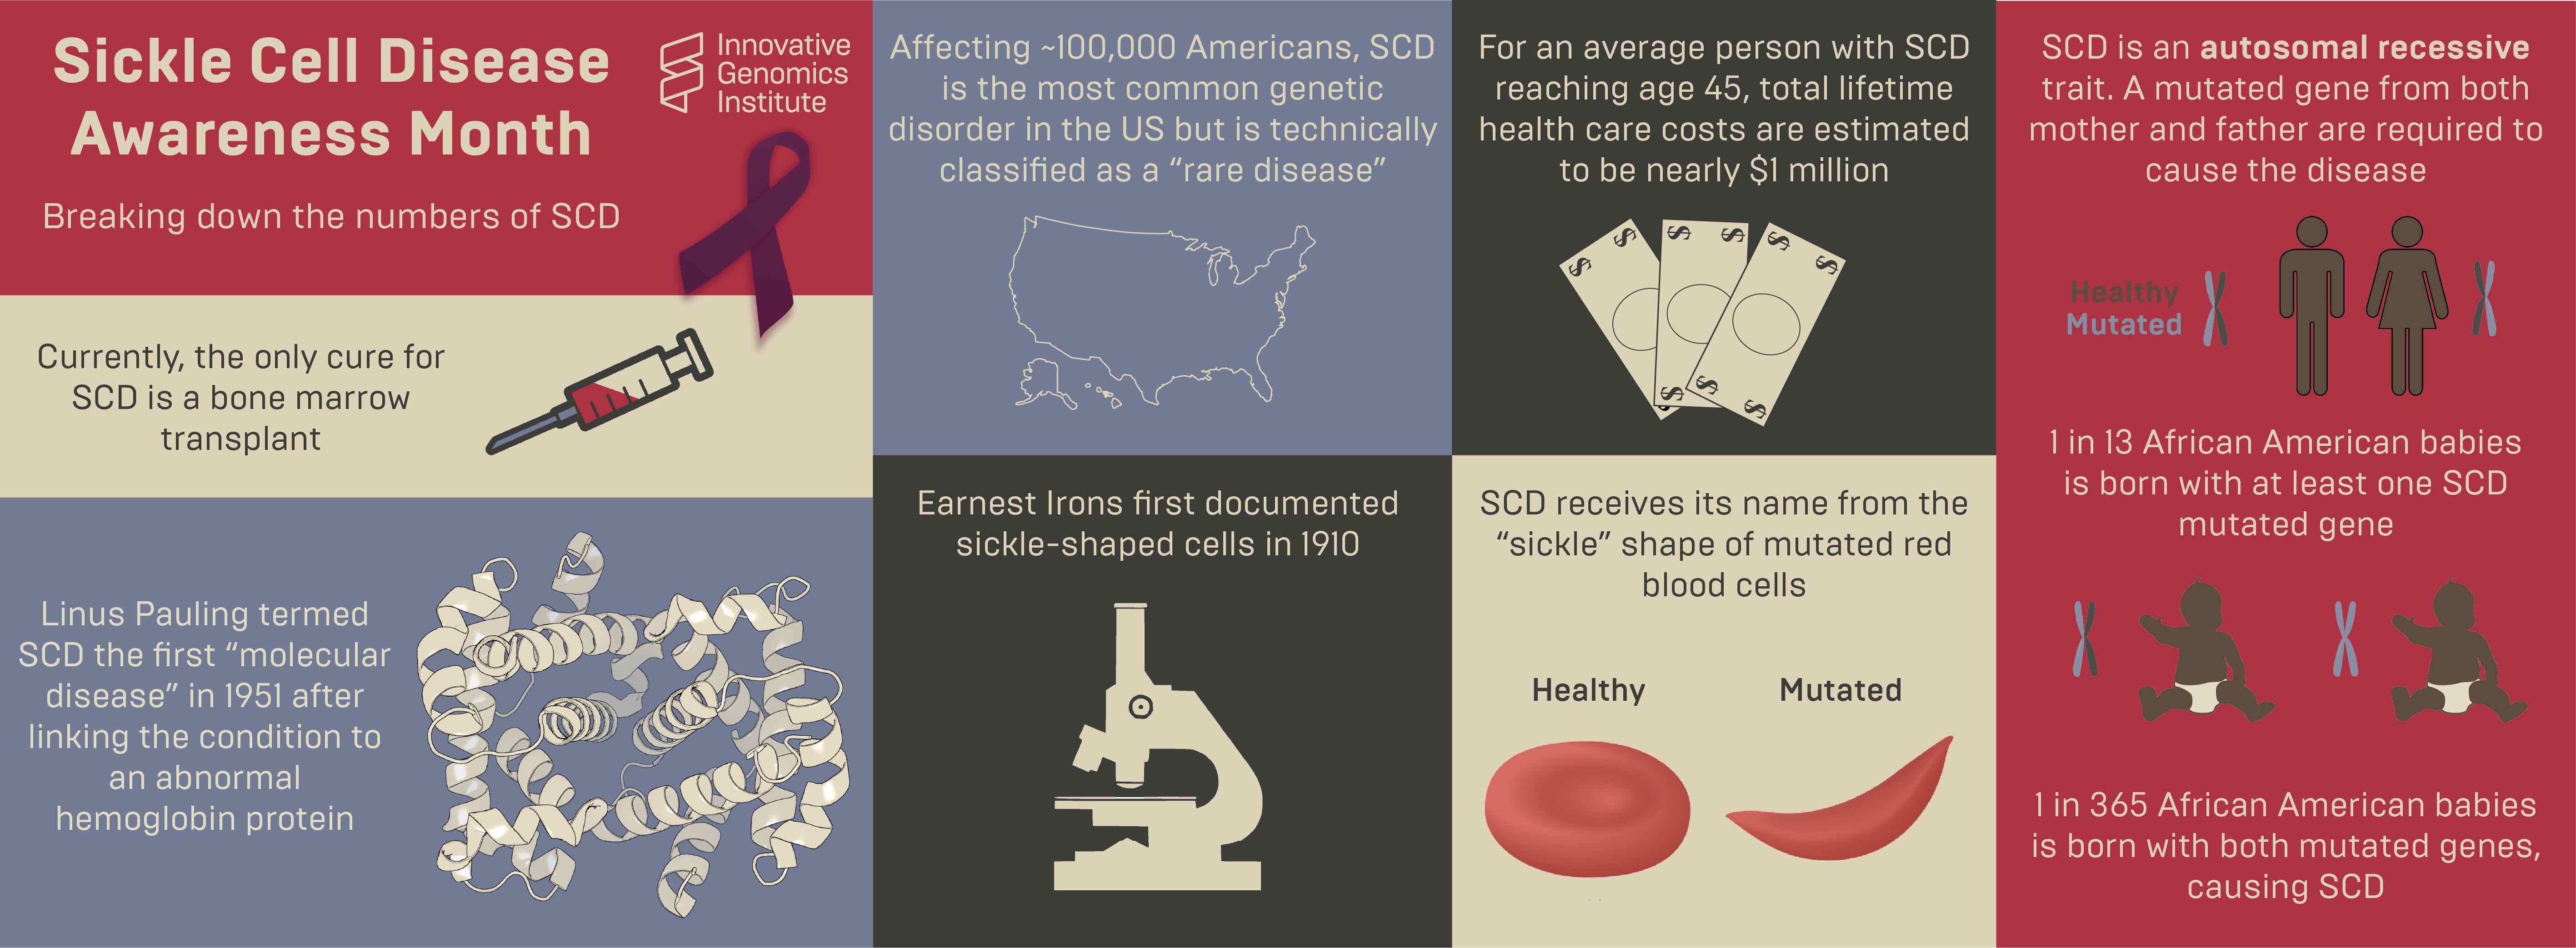 Infografía sobre la anemia de células falciformes, que describe datos básicos y estadísticas